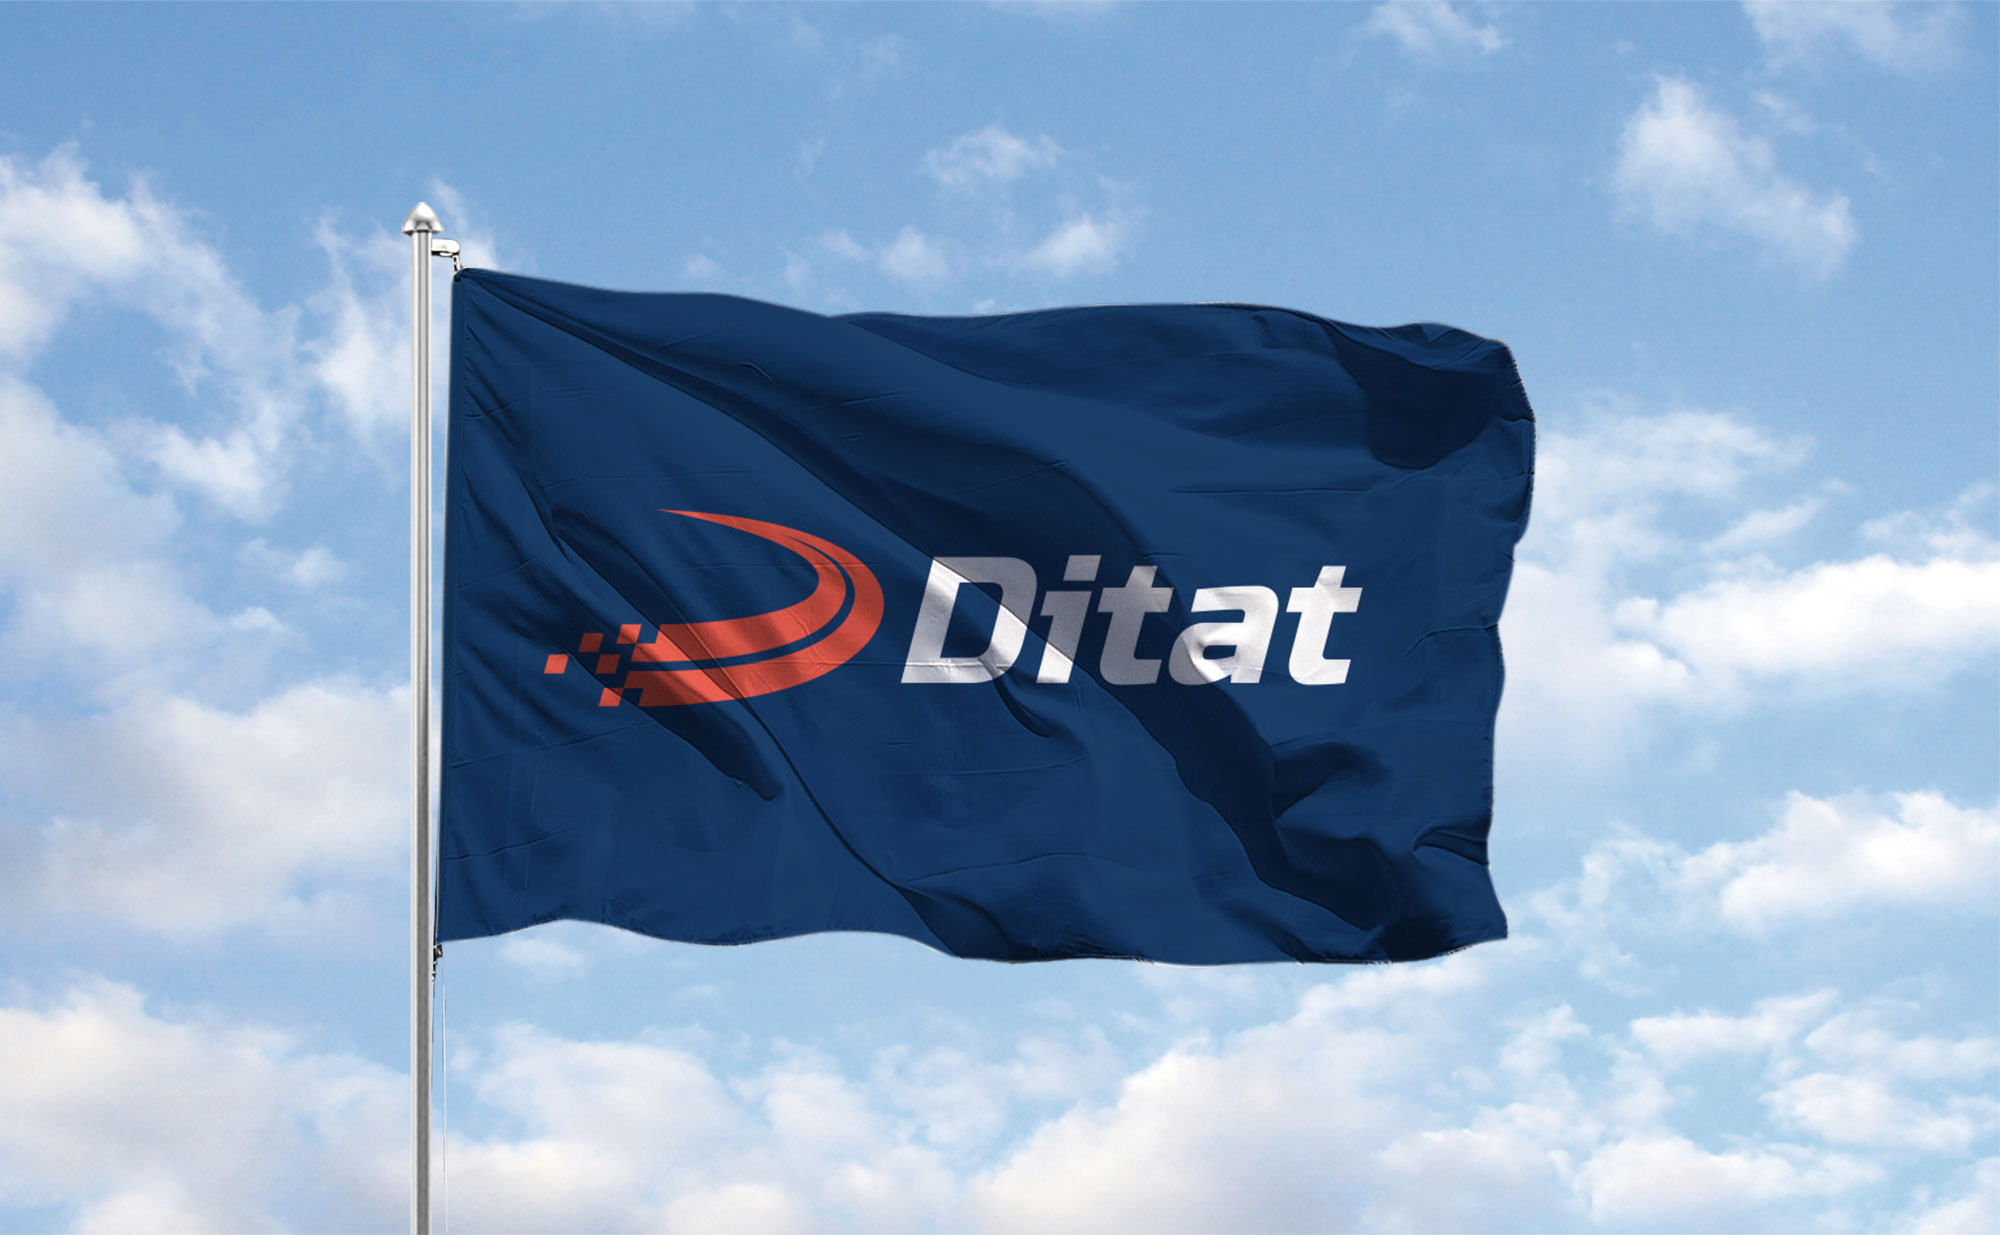 Ditat branding flag design